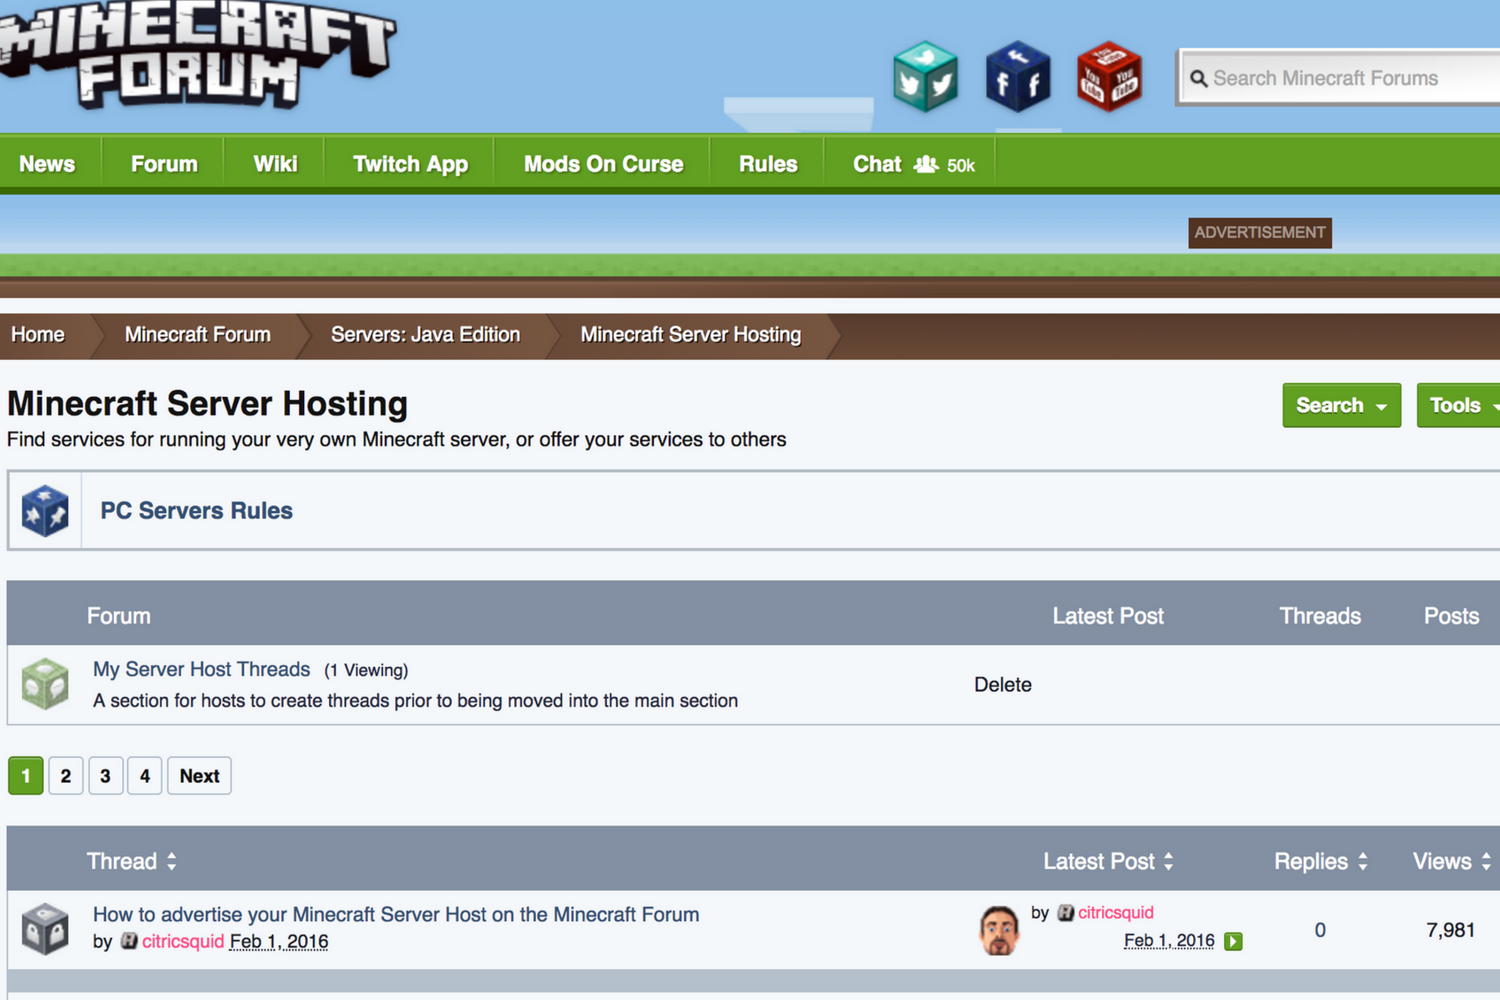 2-player survival server - Screenshots - Show Your Creation - Minecraft  Forum - Minecraft Forum